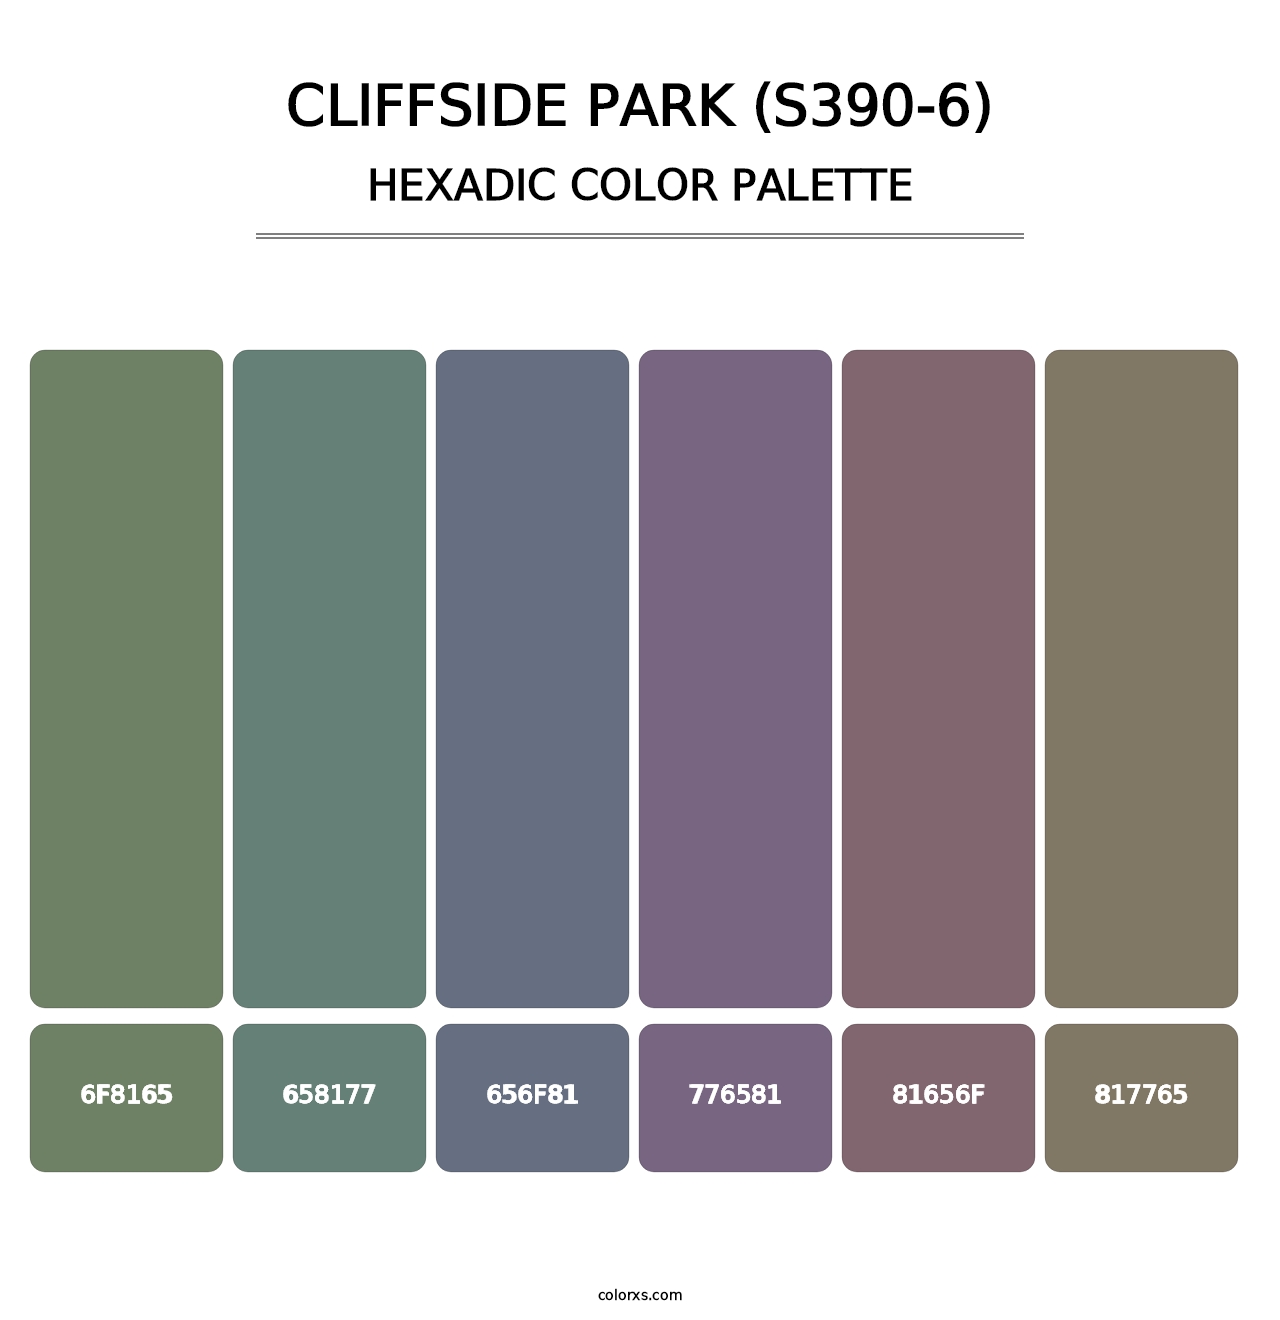 Cliffside Park (S390-6) - Hexadic Color Palette